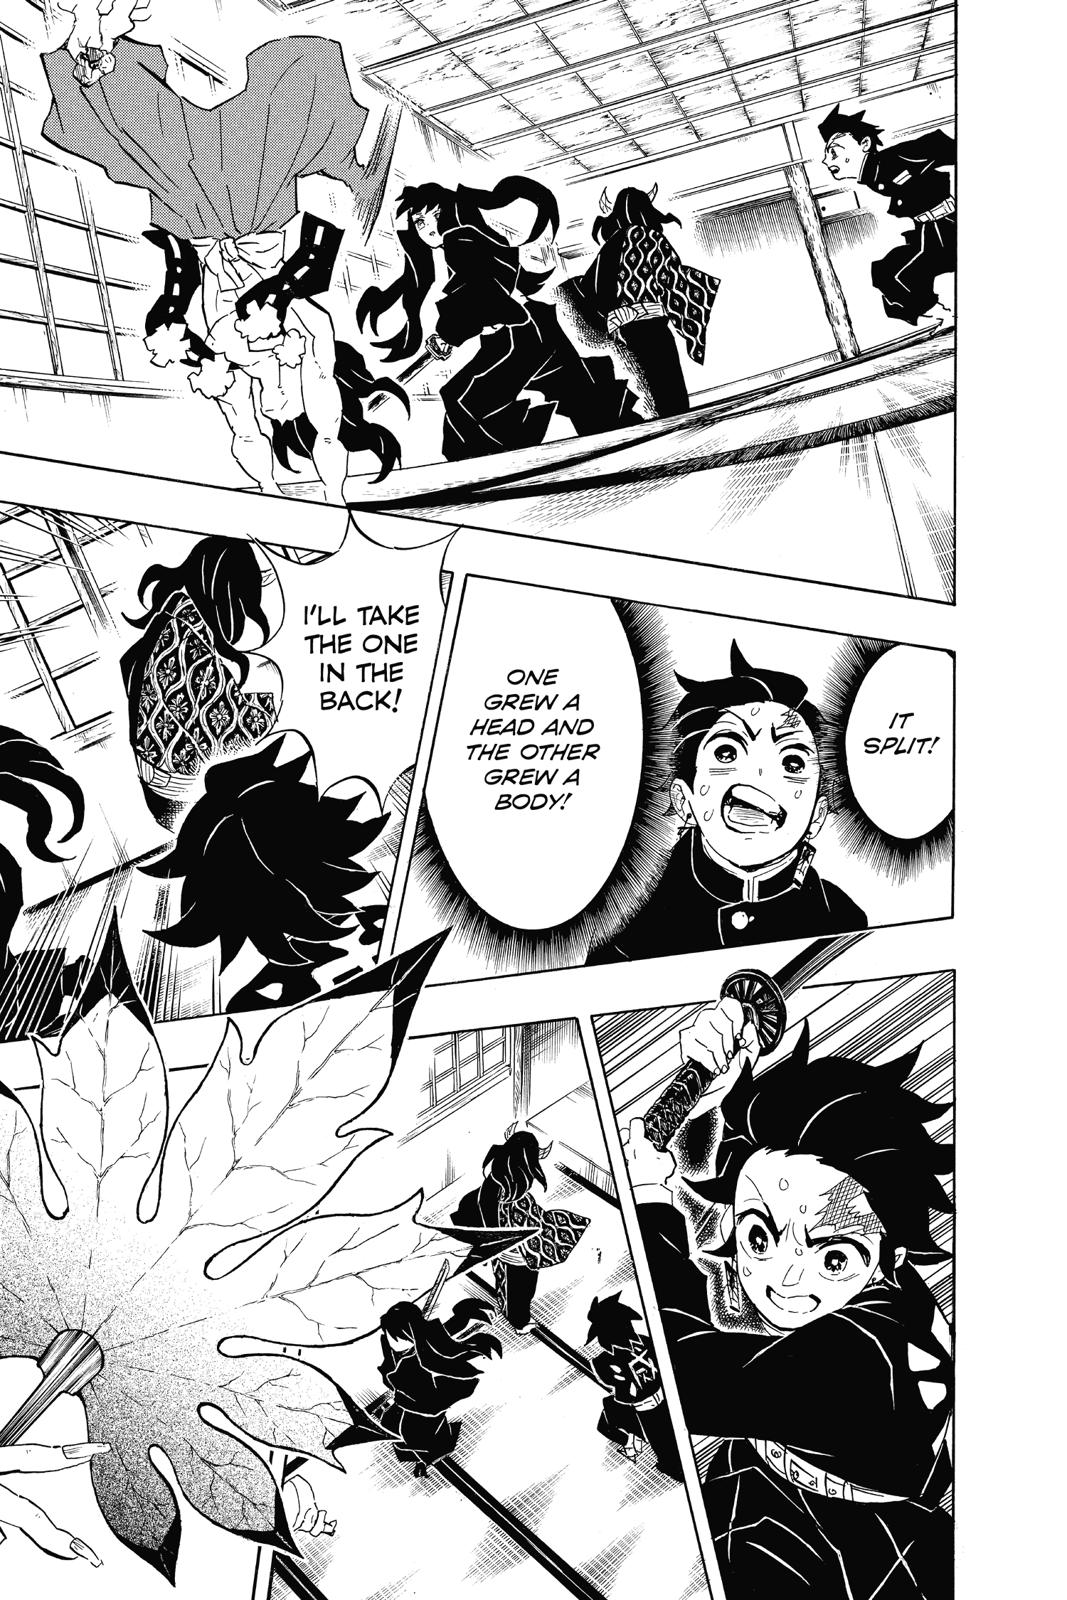 Demon Slayer Manga Manga Chapter - 106 - image 13